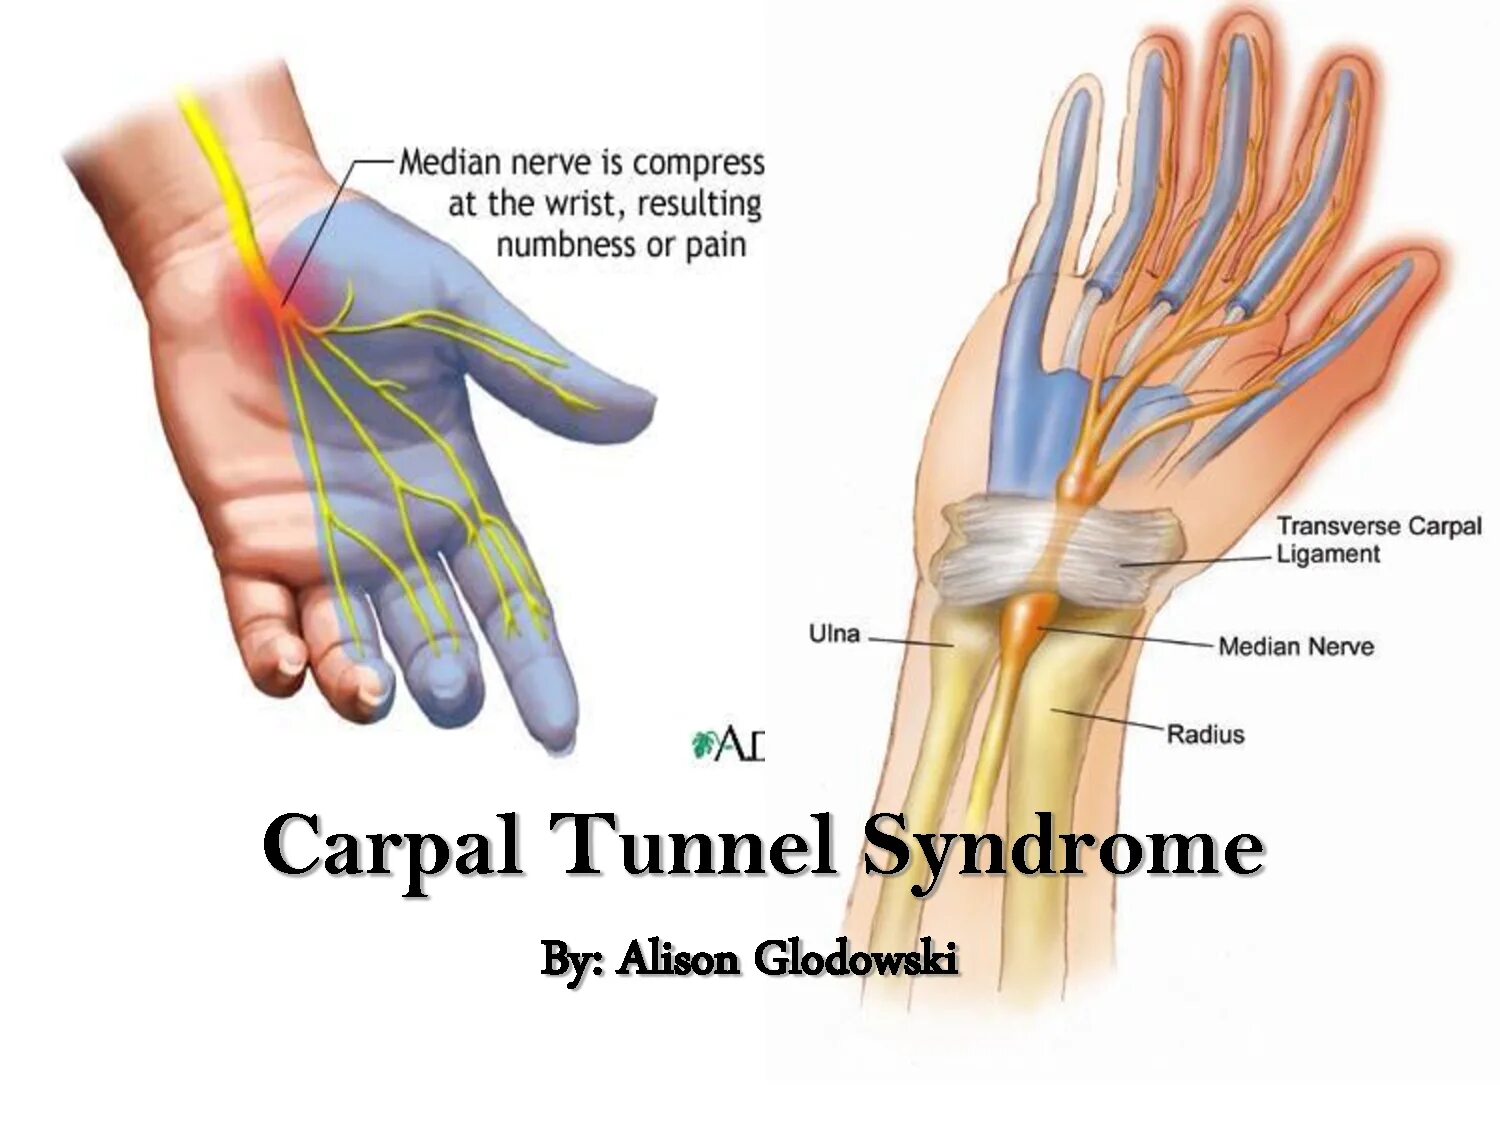 Ноющая боль в пальцах рук. Синдром запястного канала. Нейропатия срединного нерва. Синдром карпального канала запястья. Туннельный синдром запястья кисти.